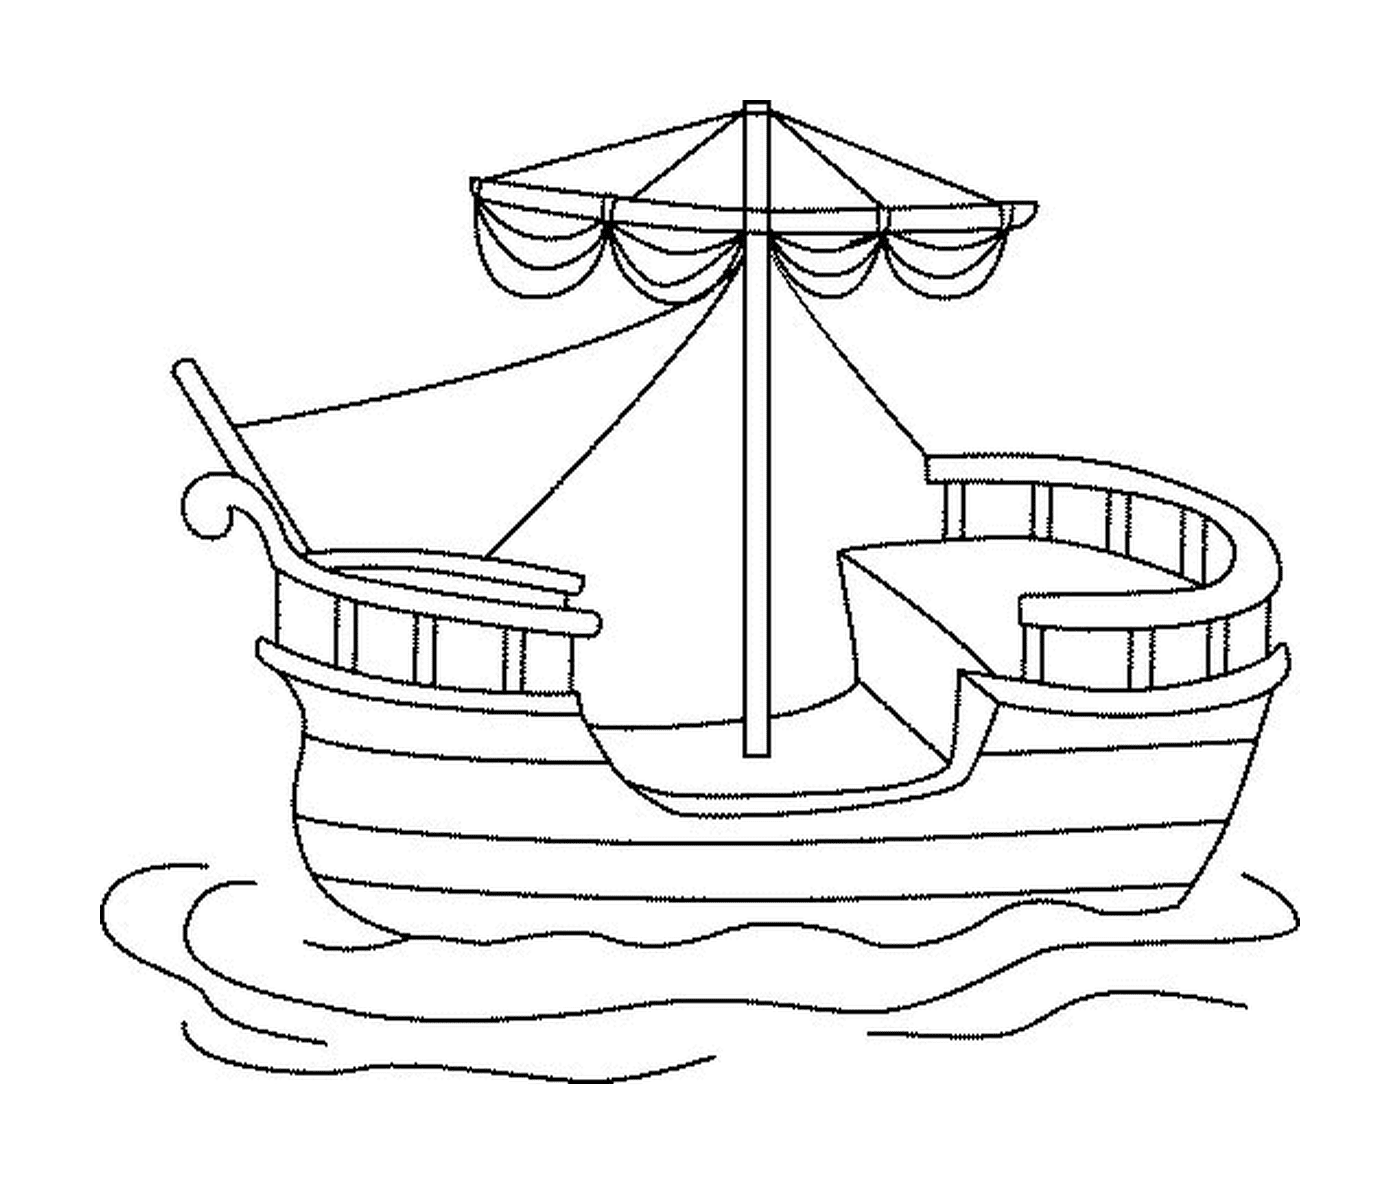  Una barca che galleggia su un tratto d'acqua 